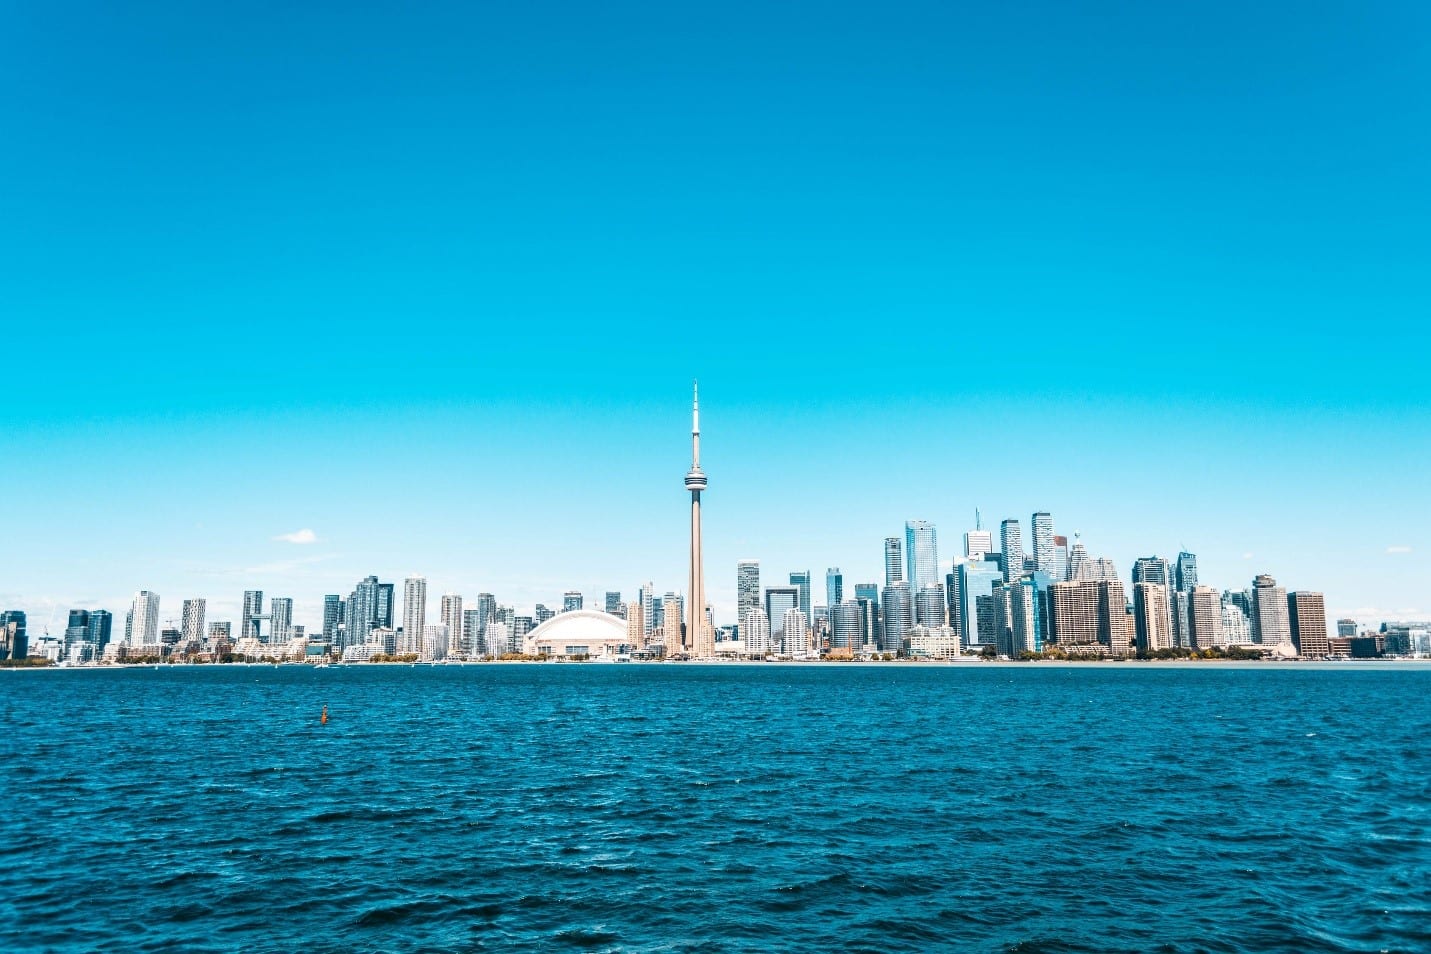 New Toronto boasts beautiful lakeside views of the Toronto skyline